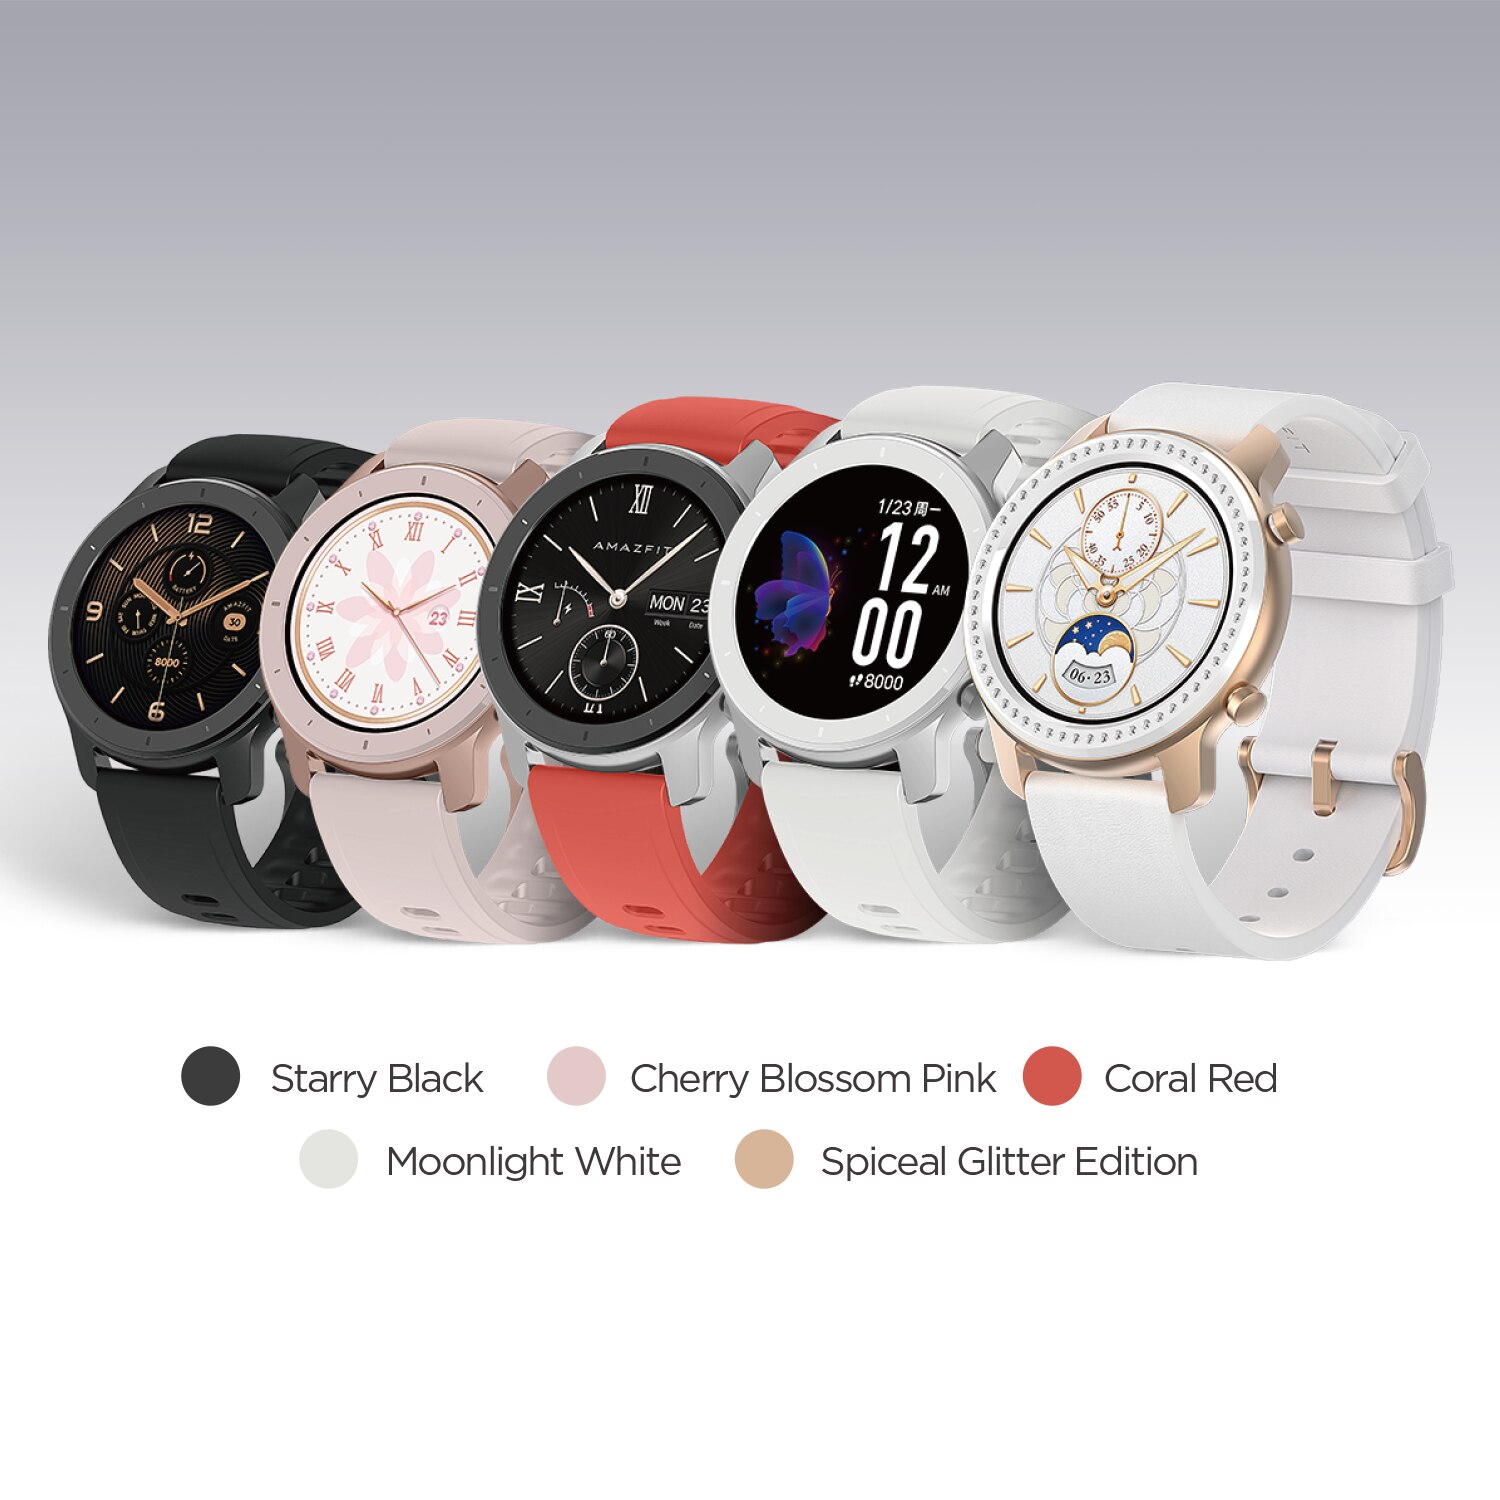 آمازفیت شیائومی Xiaomi Amazfit Smartwatch GTR42 